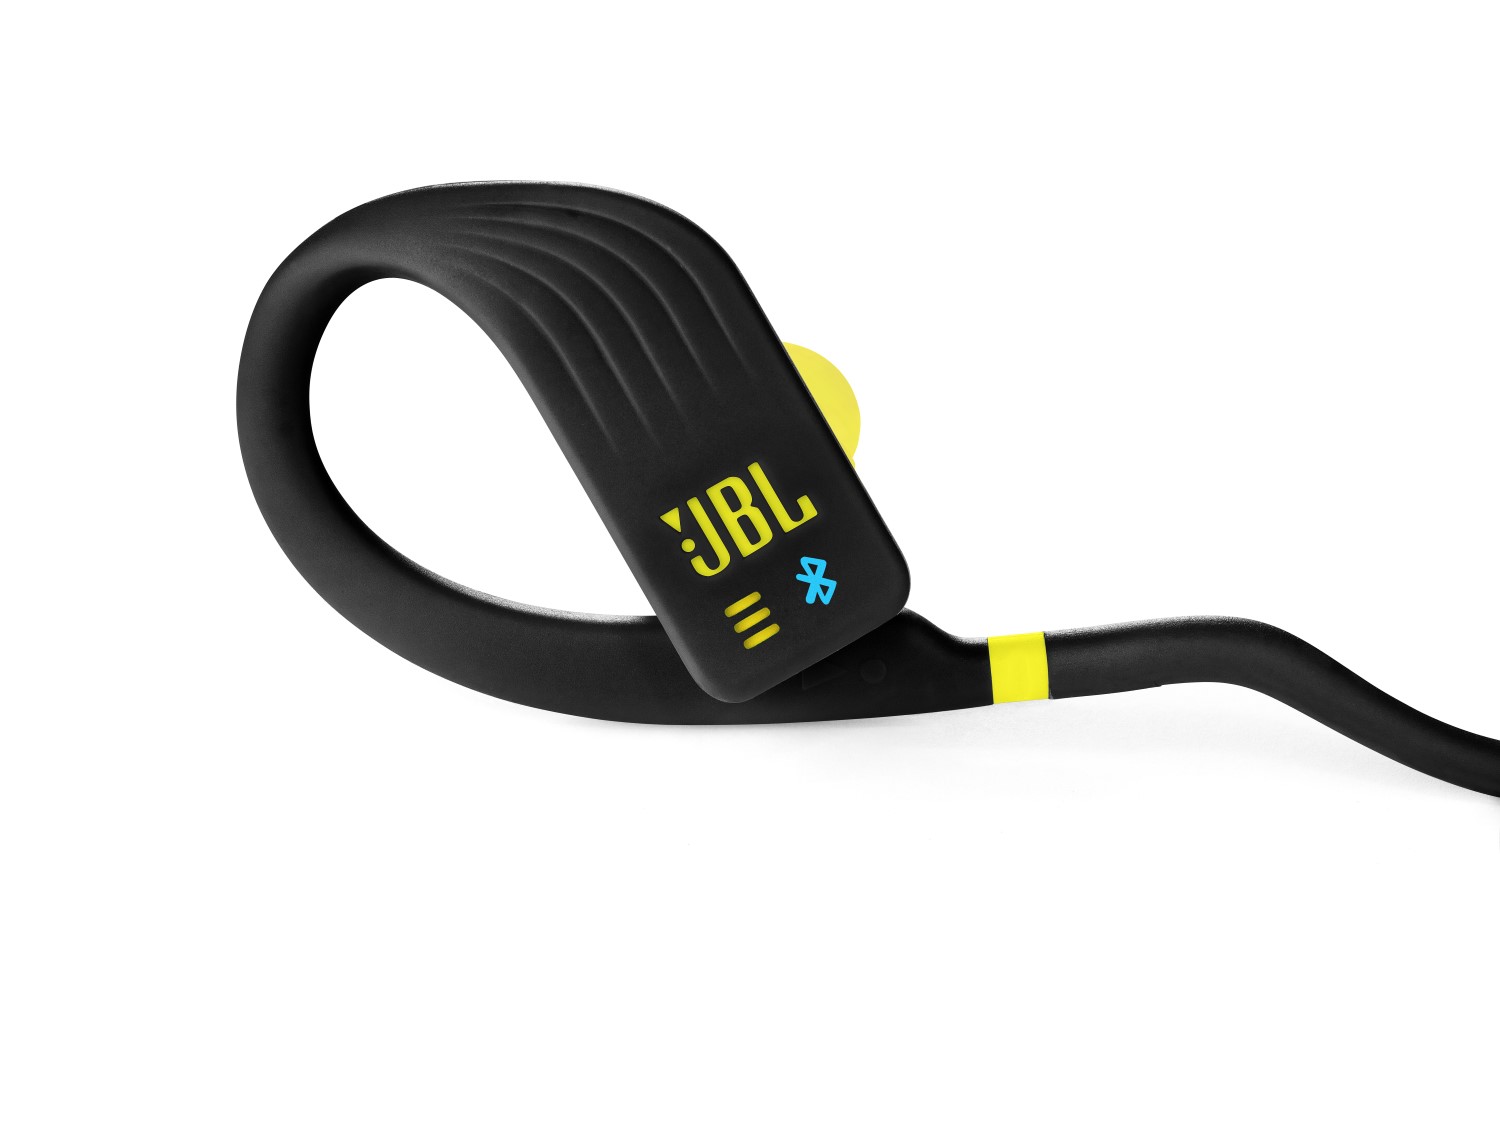 JBL Endurance Dive Yellow Wireless Sports In-Ear Earphones